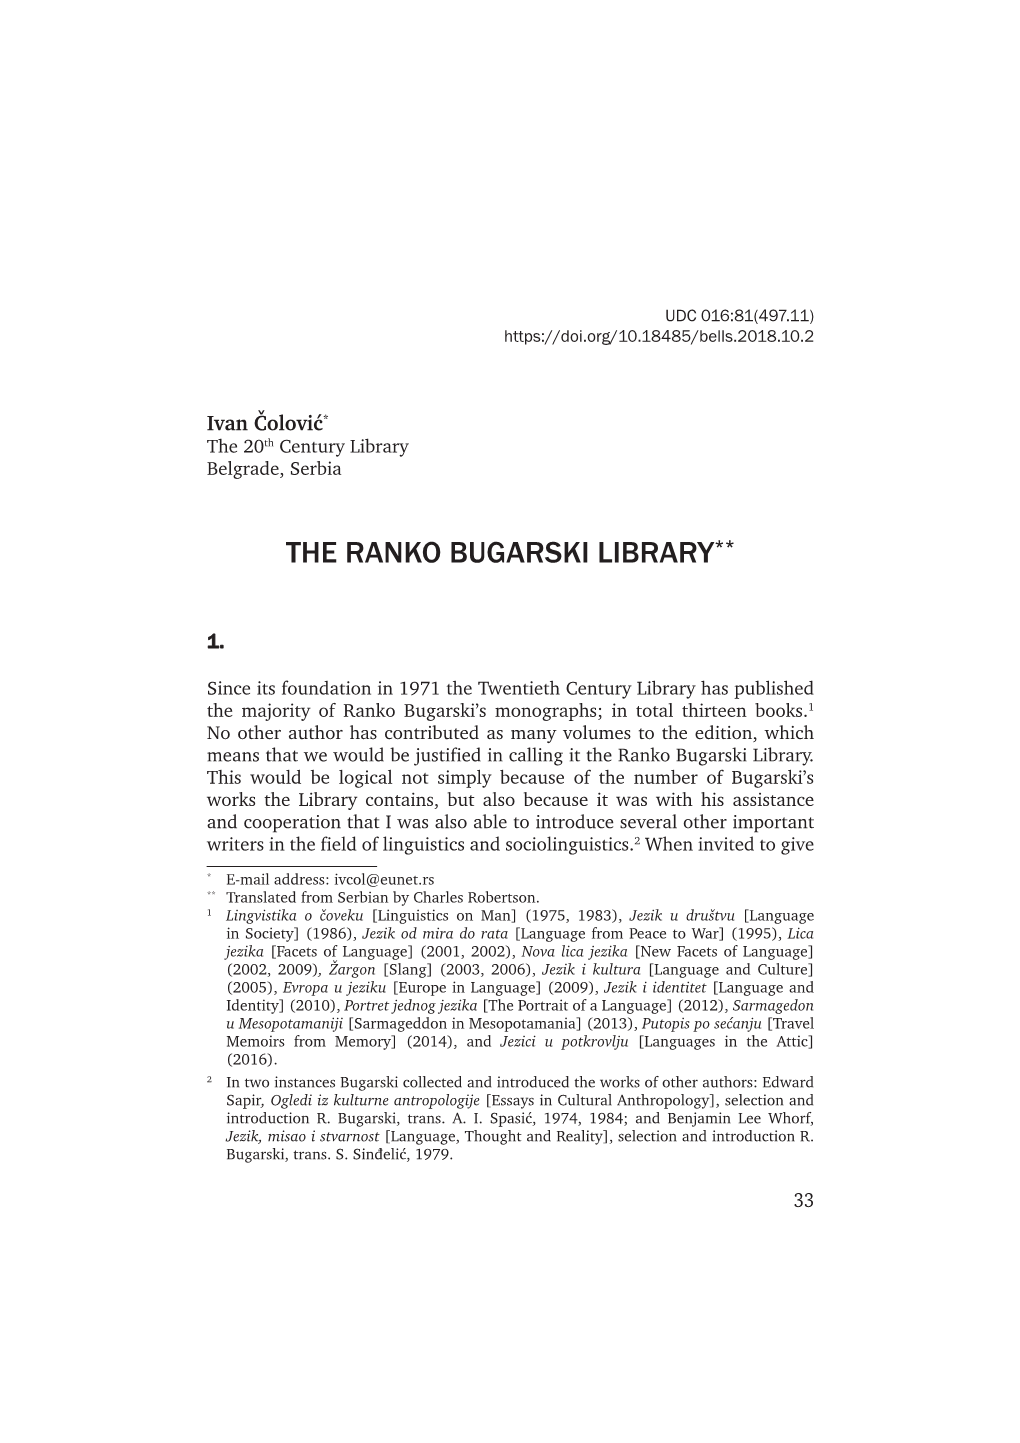 The Ranko Bugarski Library**